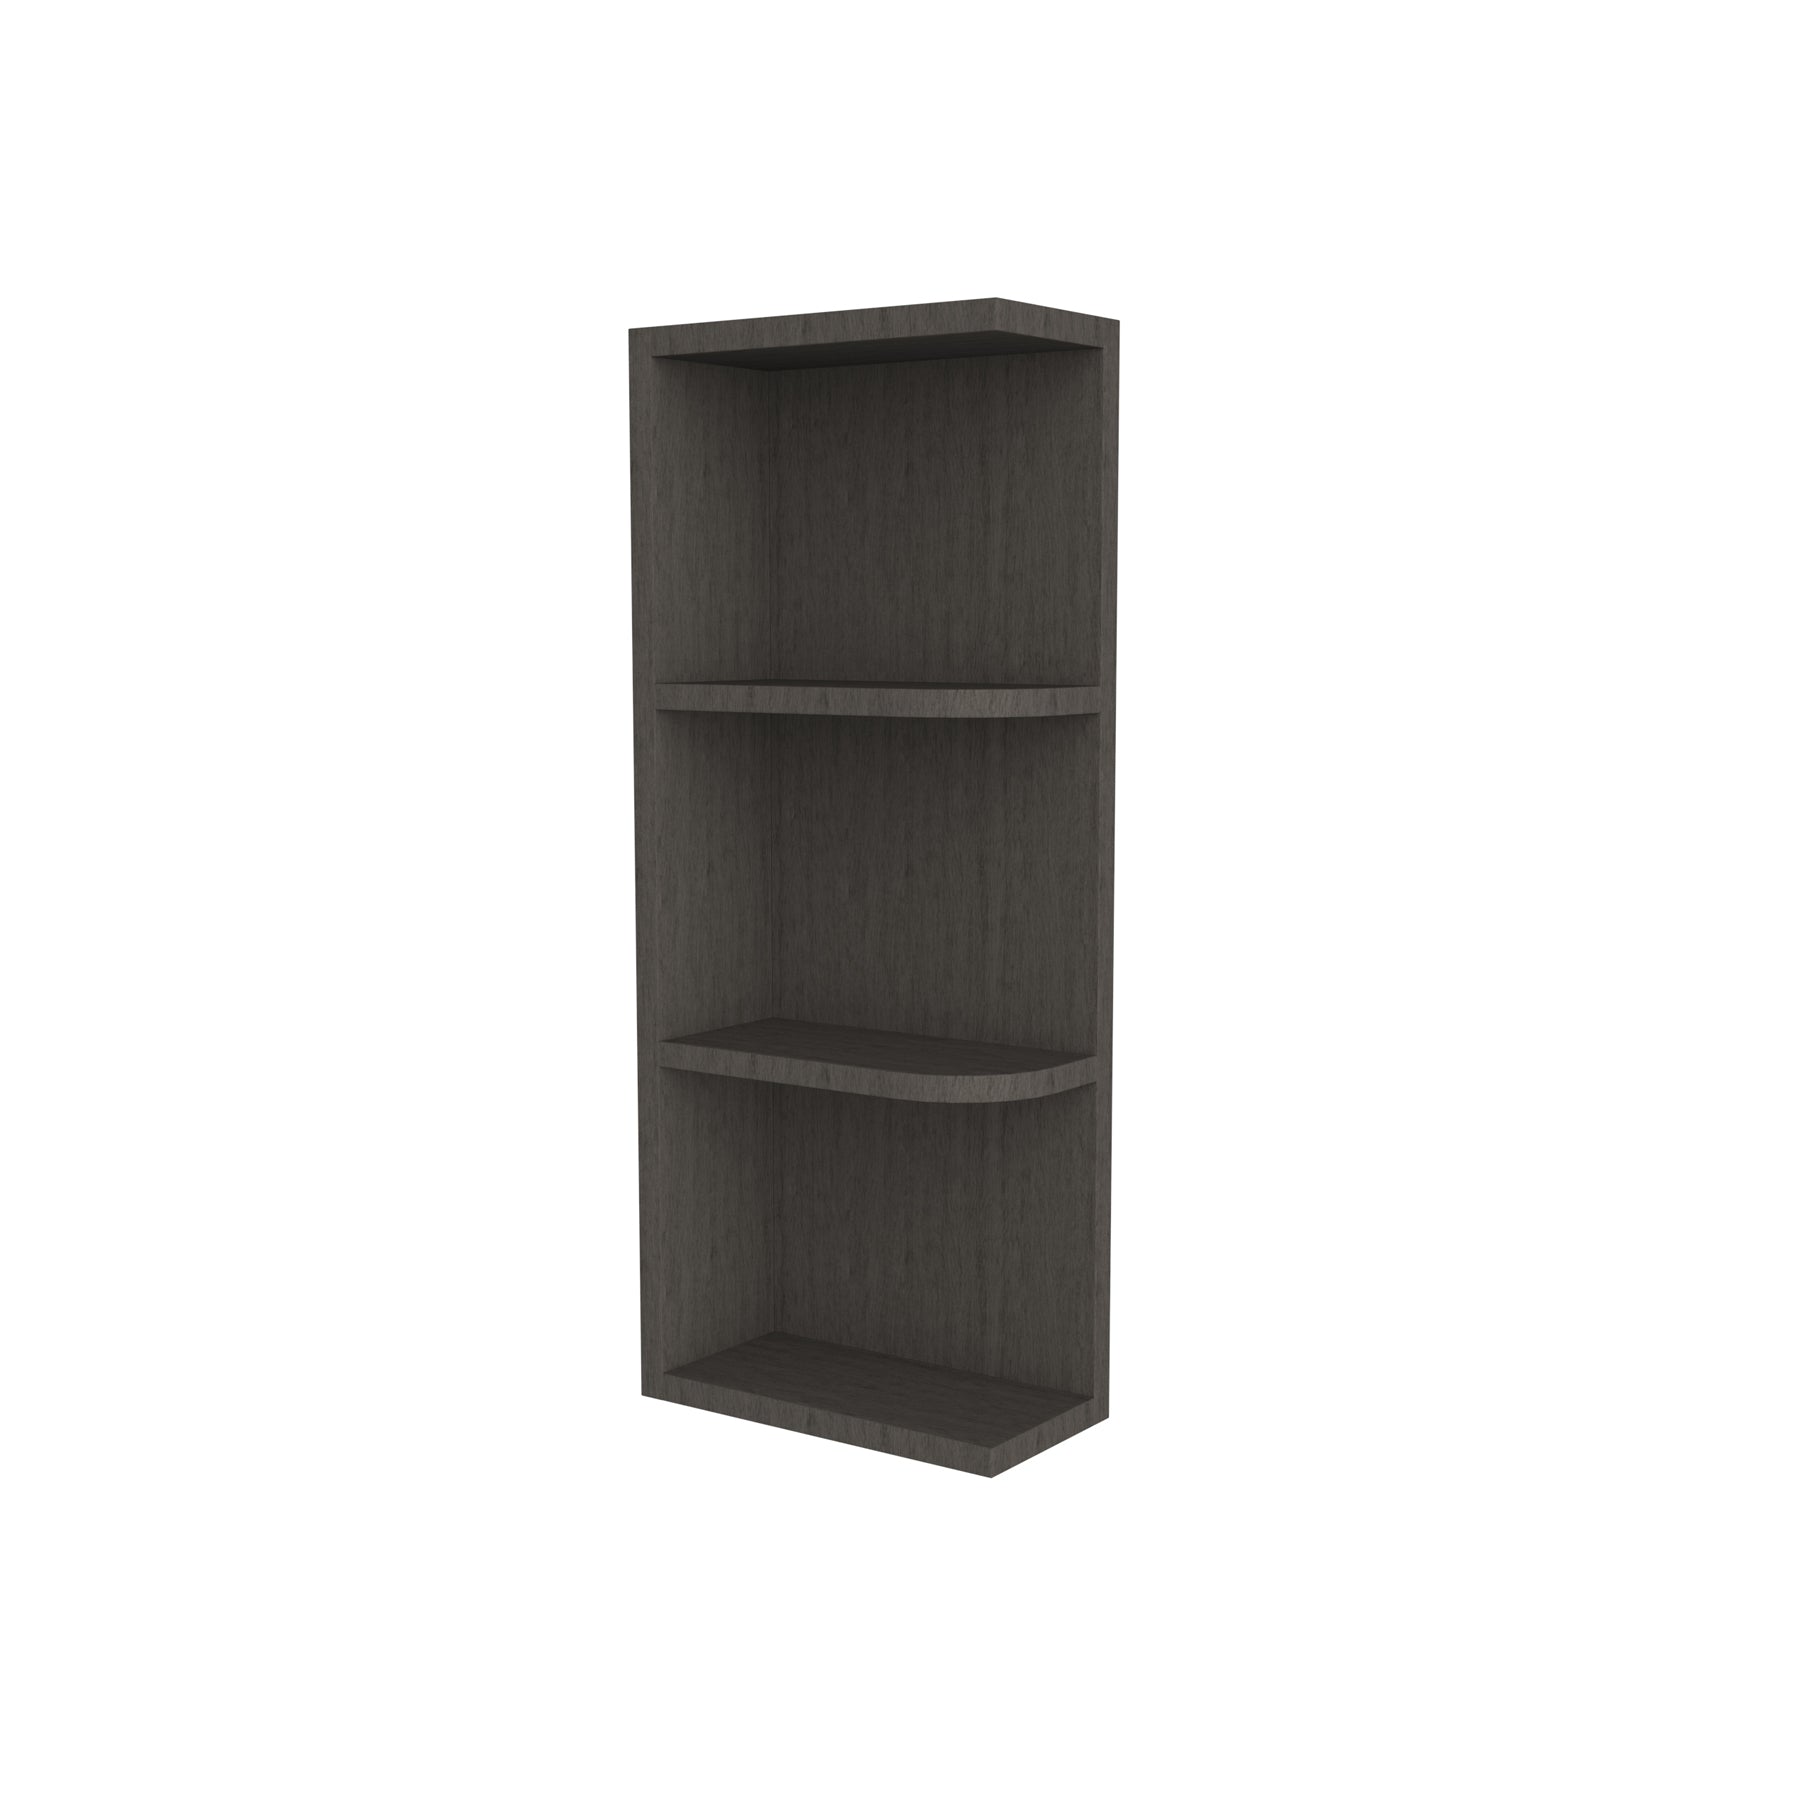 Elegant Smoky Grey - Knick Knack Wall Shelf | 6"W x 30"H x 12"D